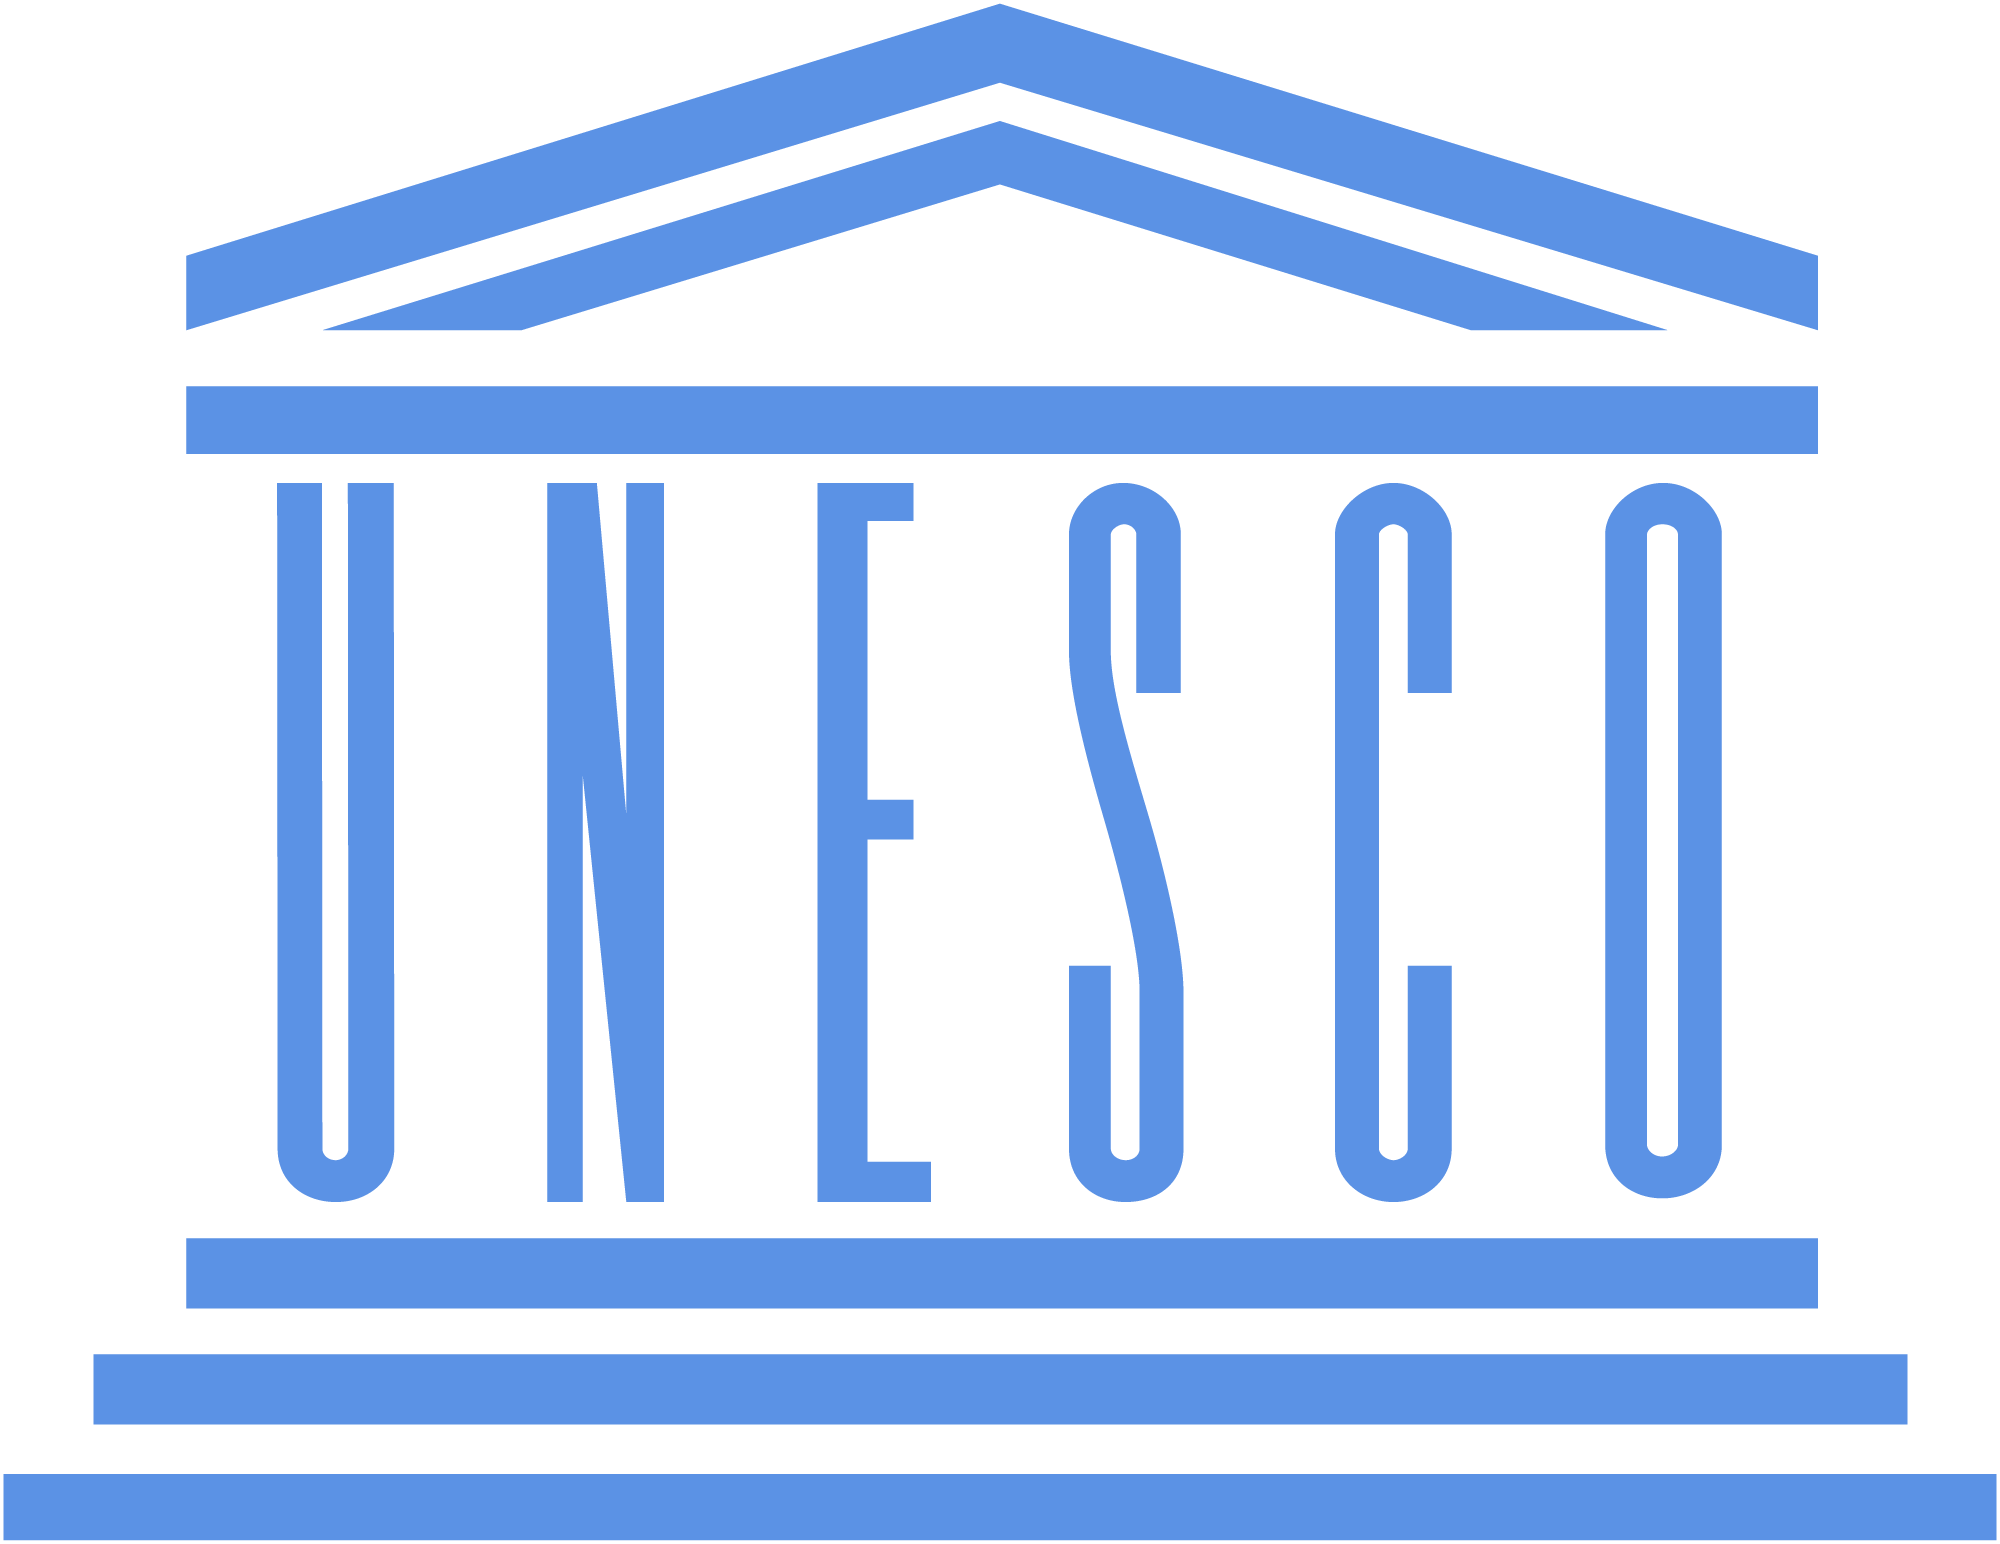 ЮНЕСКО-да «Ұлы дала: мәдени мұра және әлем тарихындағы рөлі» форумы басталды